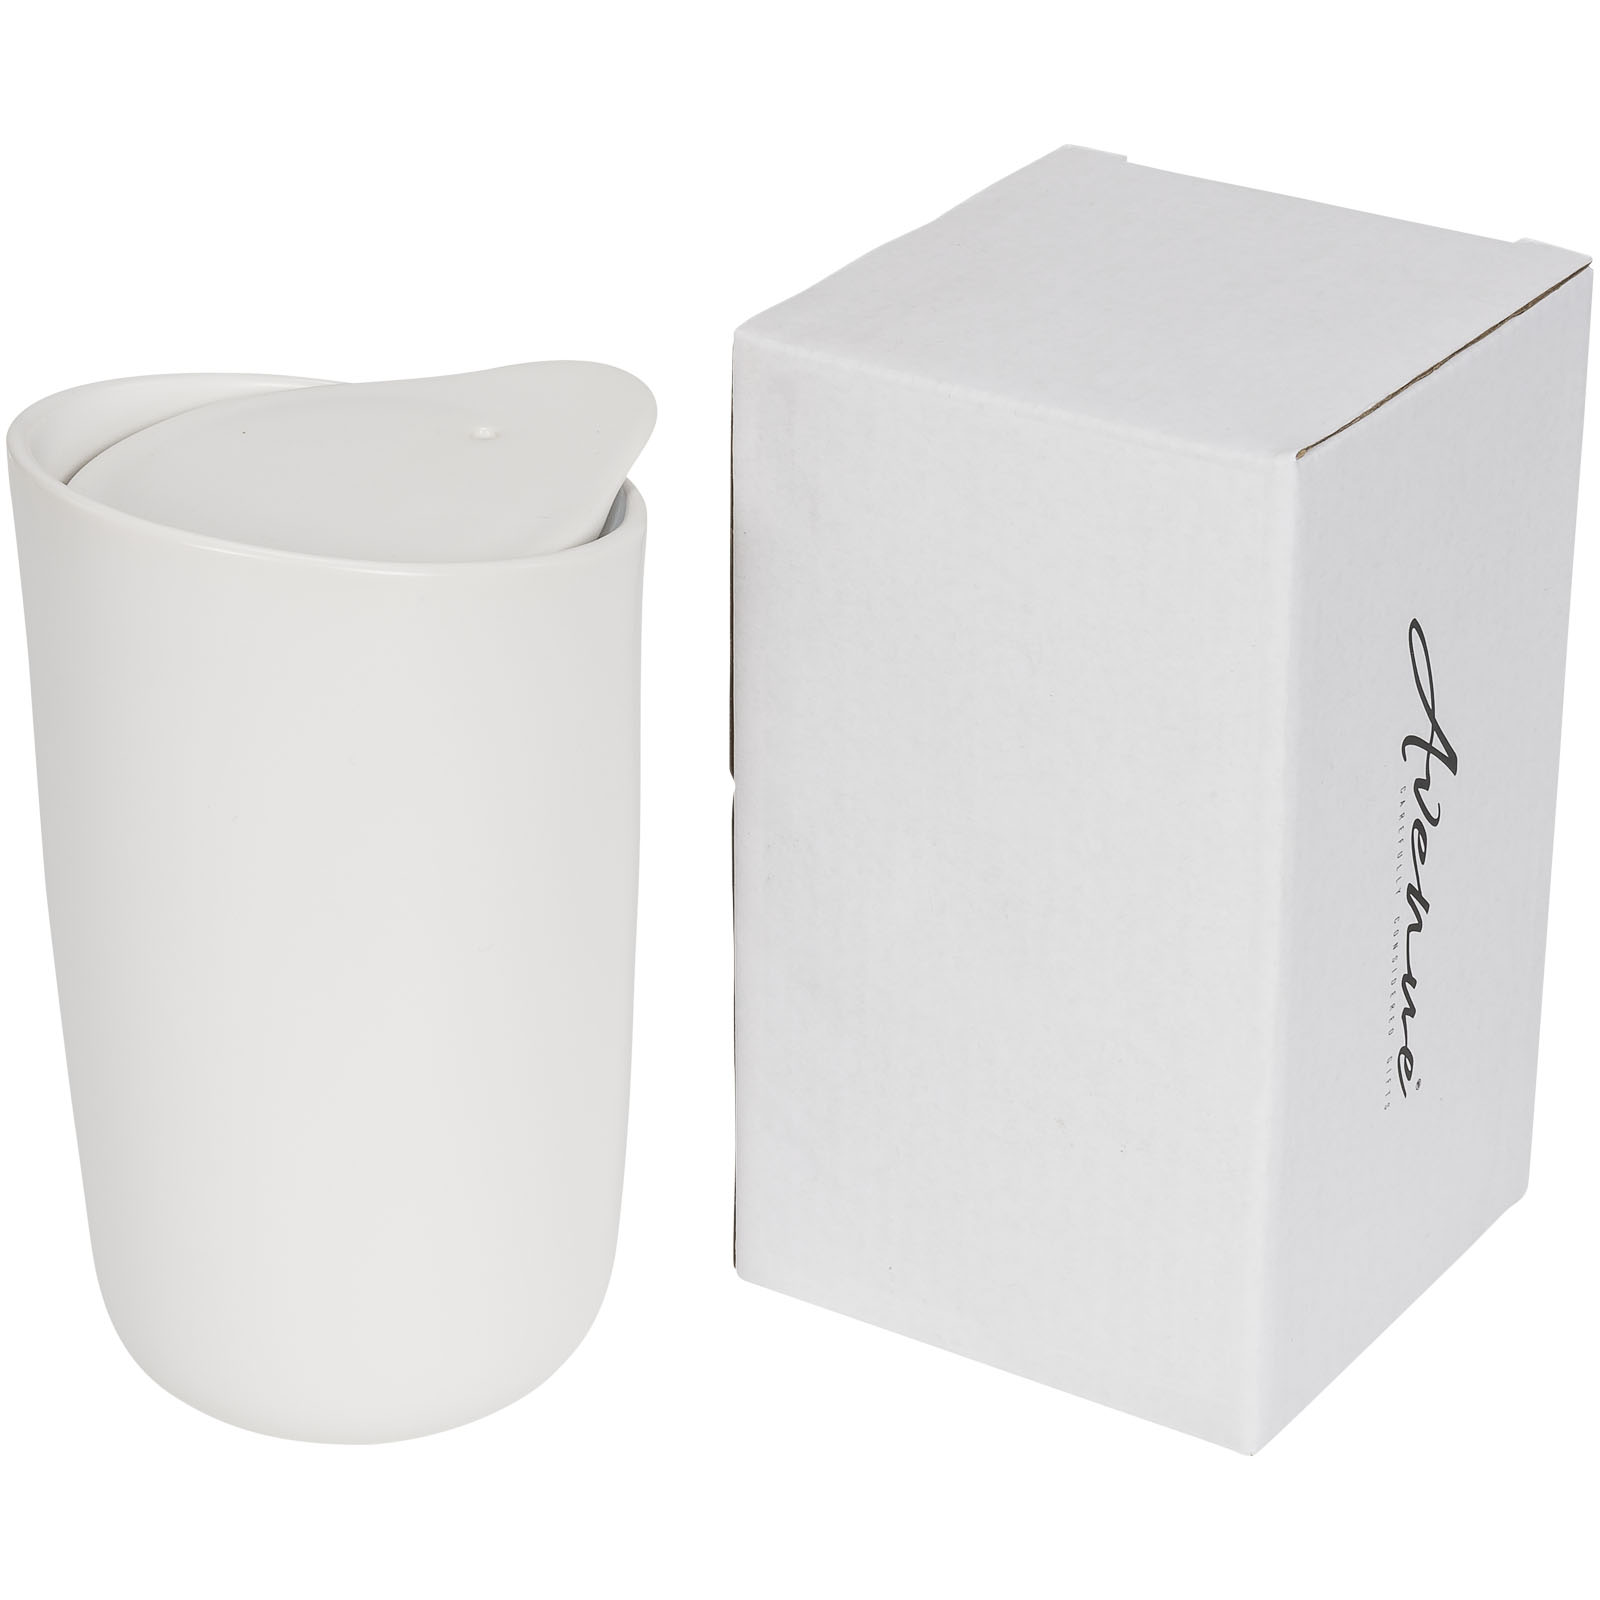 Advertising Travel mugs - Mysa 410 ml double-walled ceramic tumbler